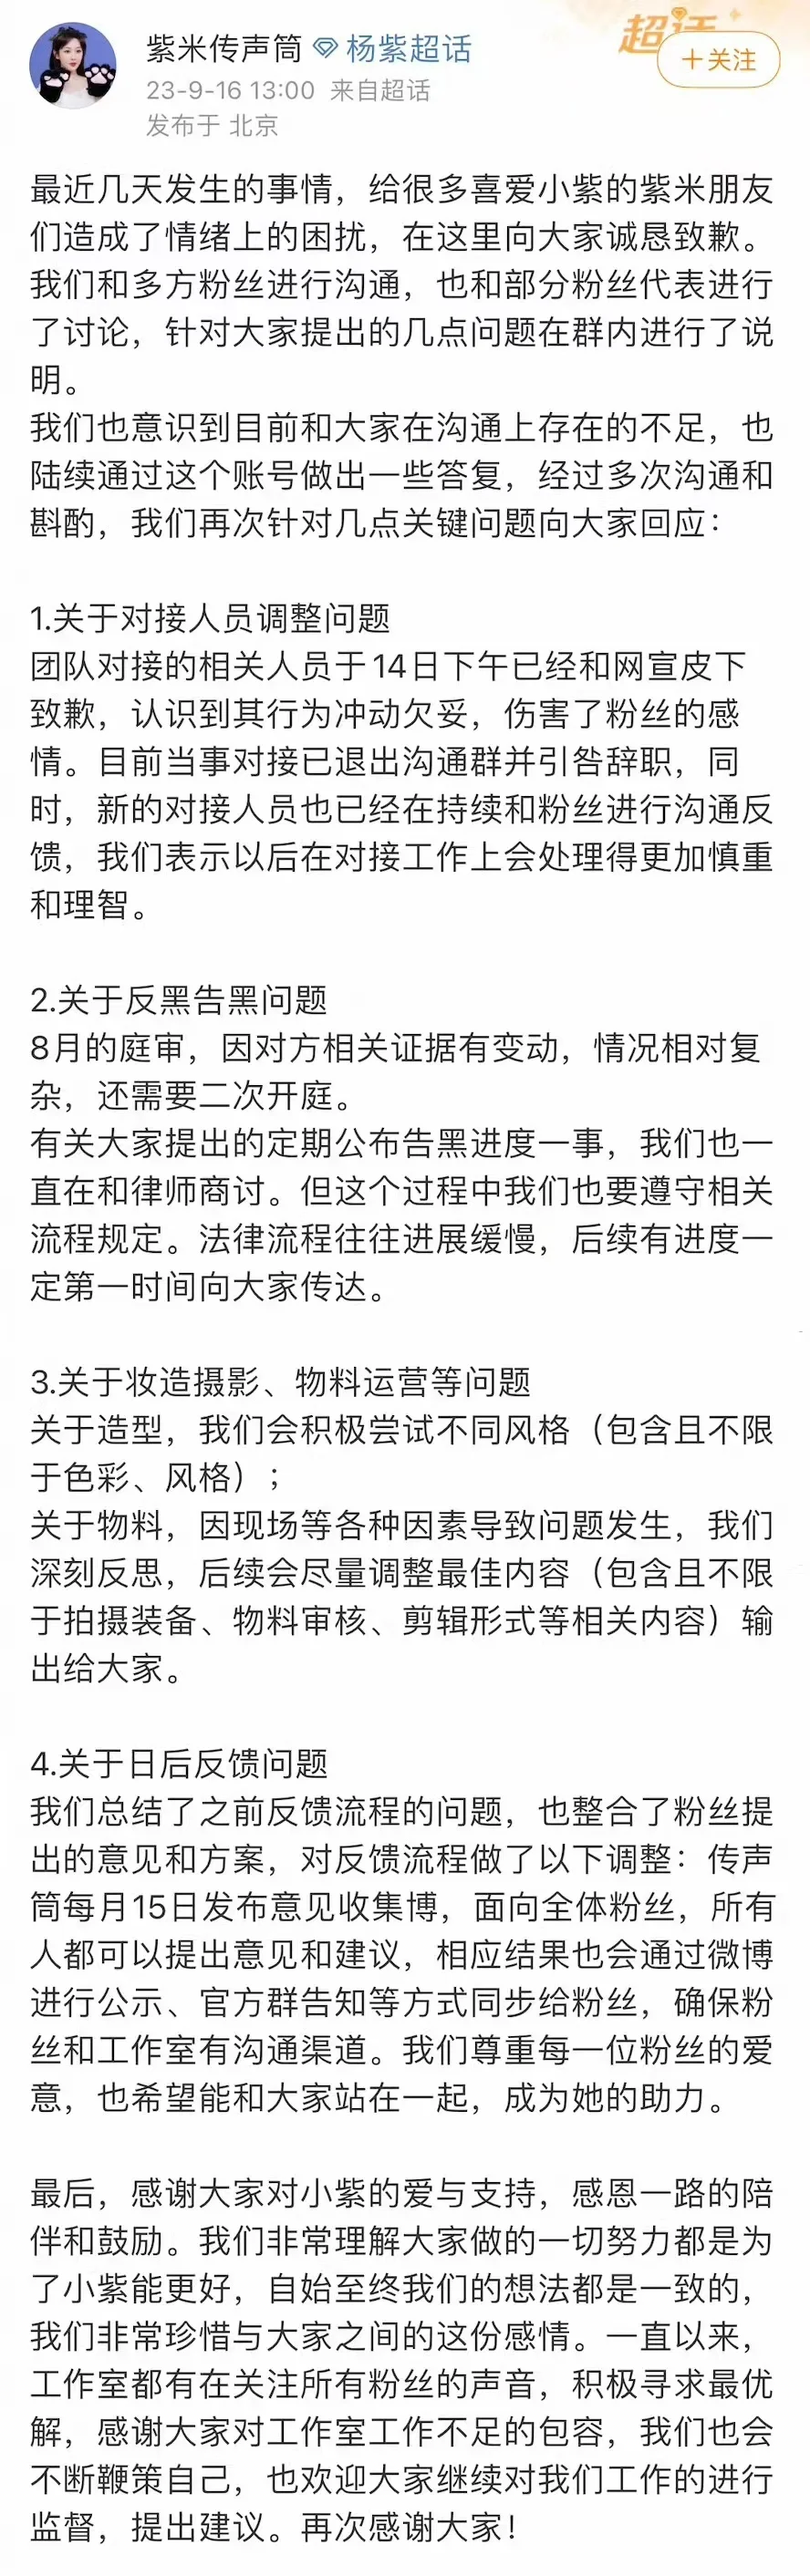 杨紫方发文回应近期争议 并向粉丝诚恳致歉